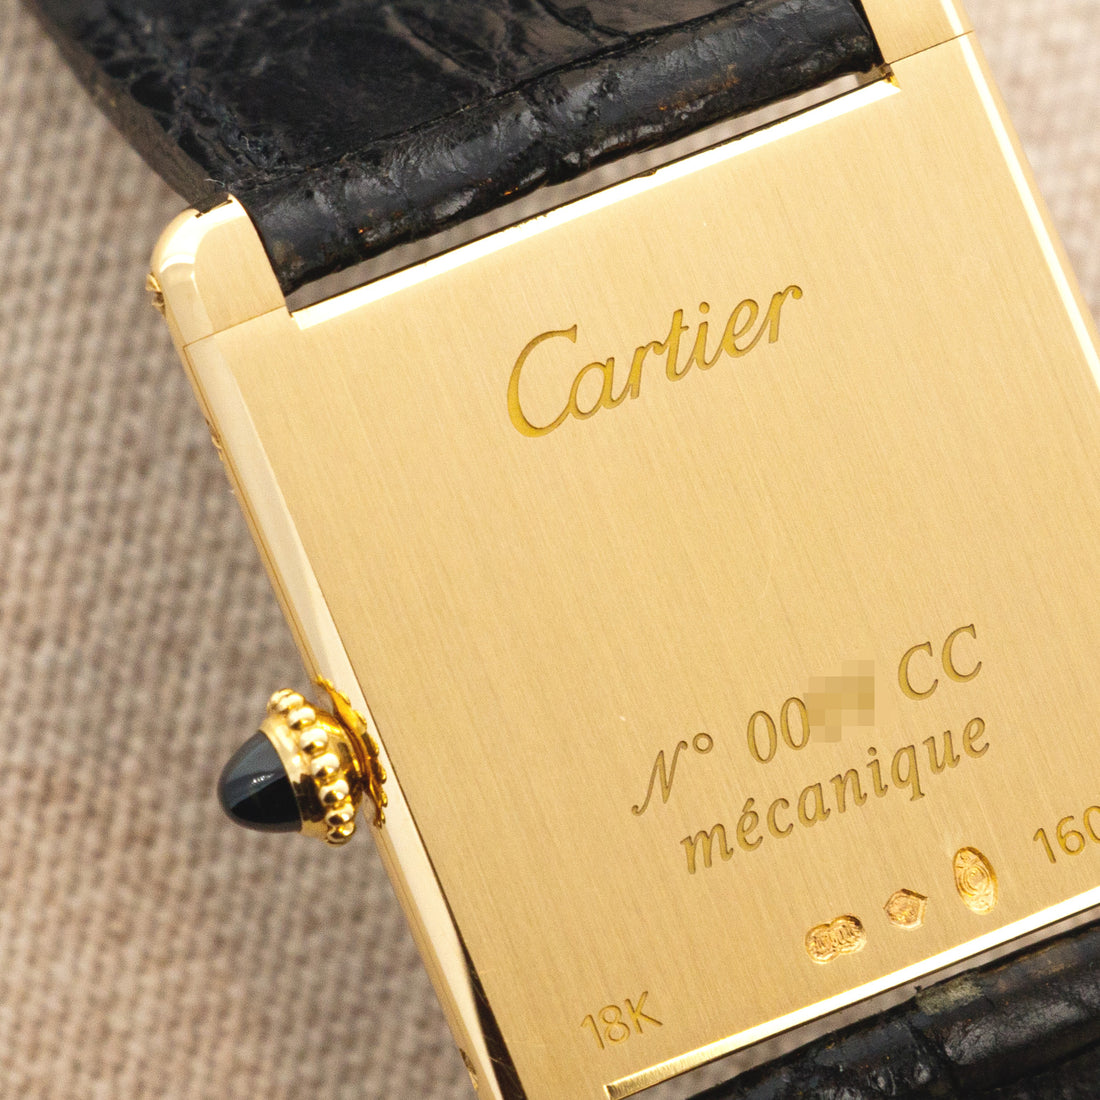 60001 Cartier Tank Louis Cartier Yellow Gold